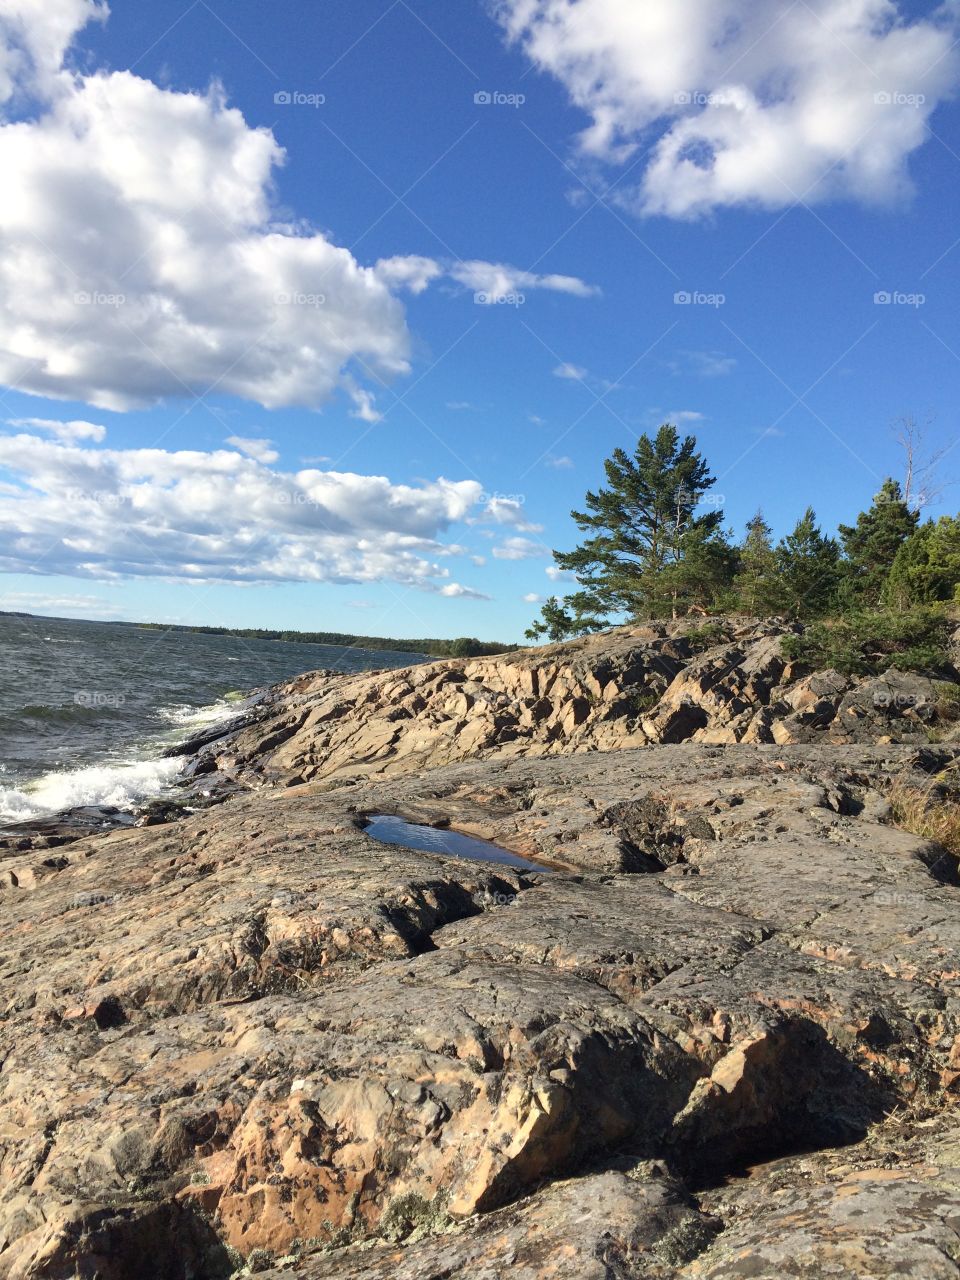 Coastal landscape from Sweden